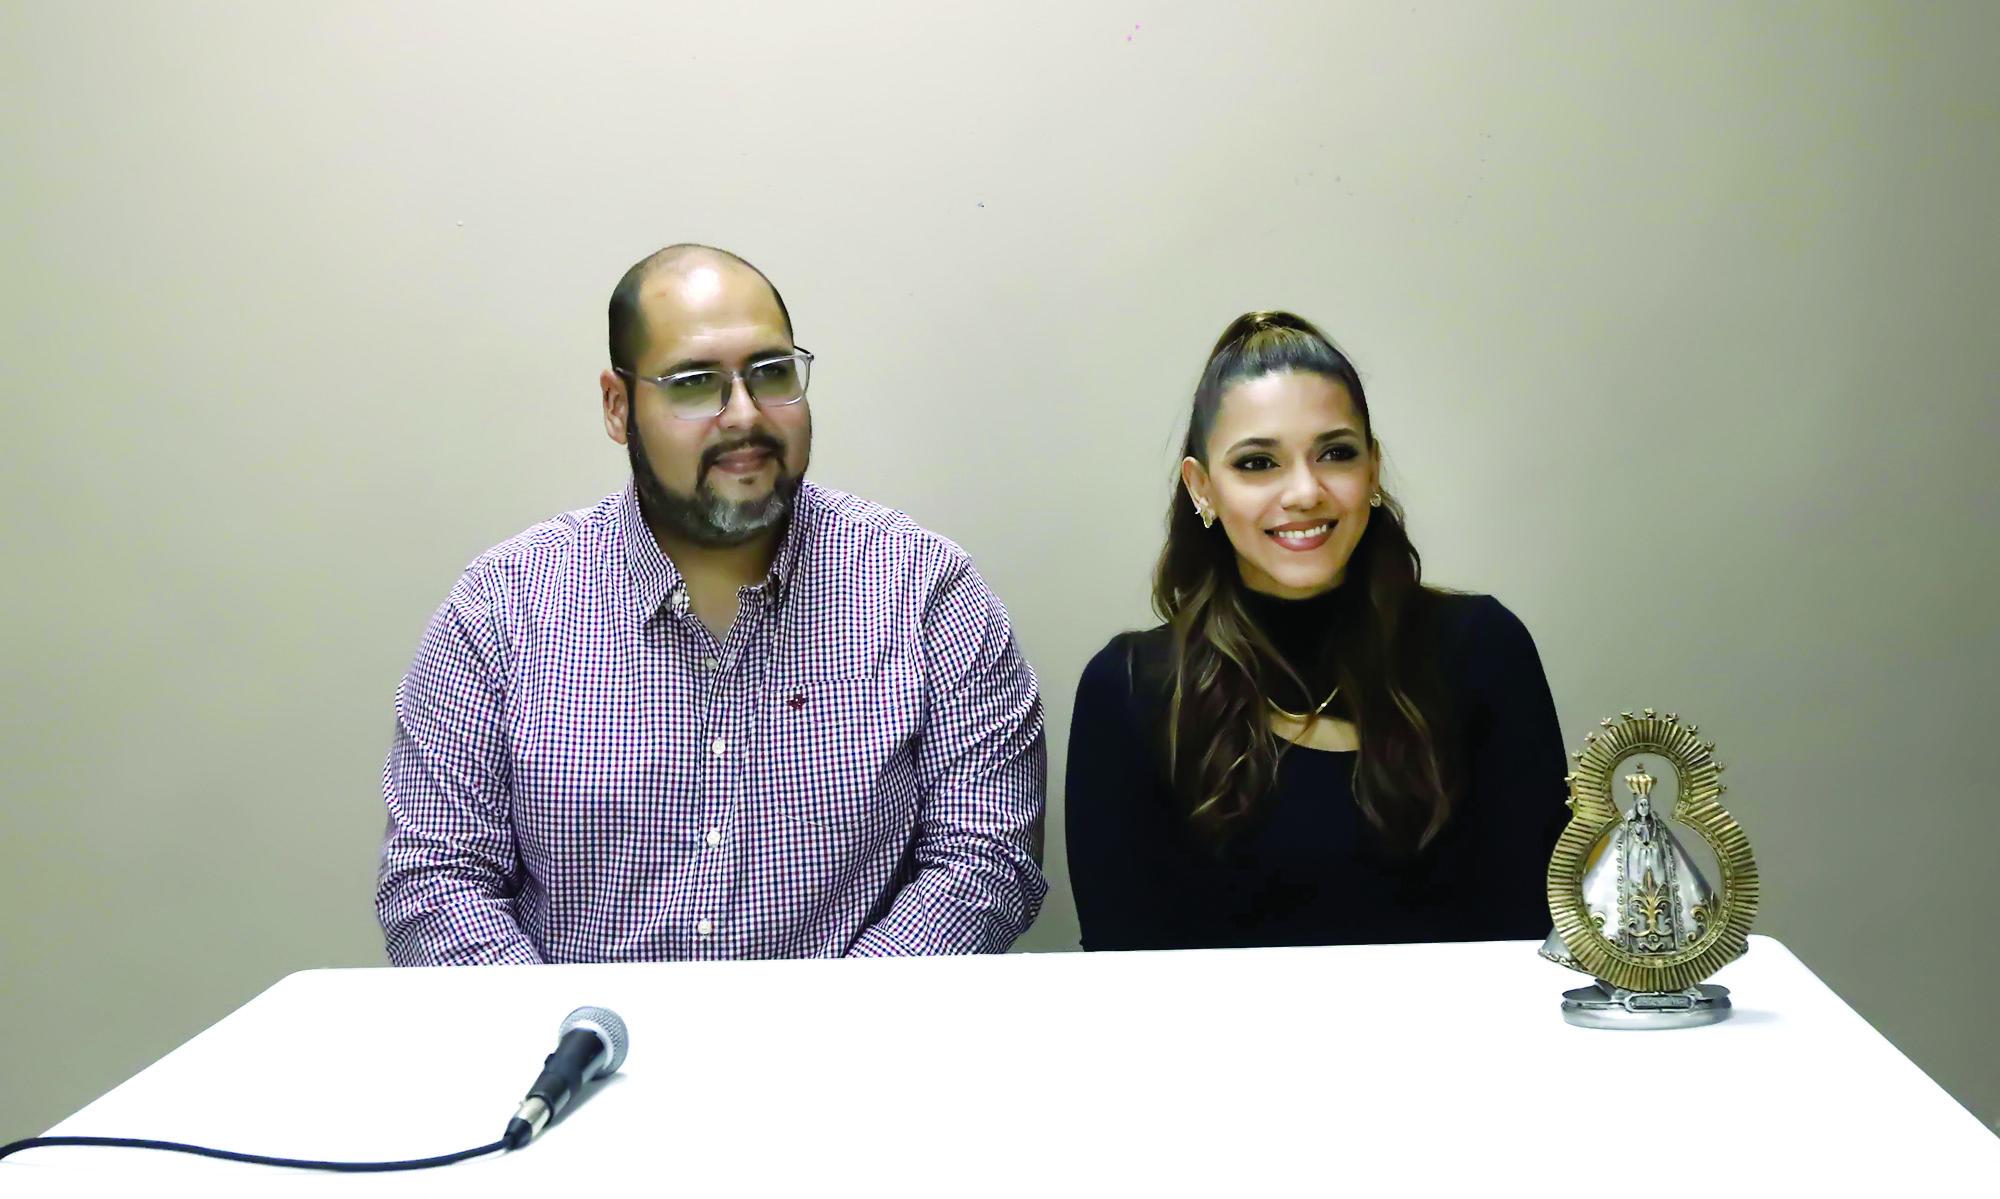 La artista junto al productor puertorriqueño Rafael Carrasquillo durante la conferencia de prensa ofrecida para el lanzamiento de ‘Valiente’ en radio Luz.